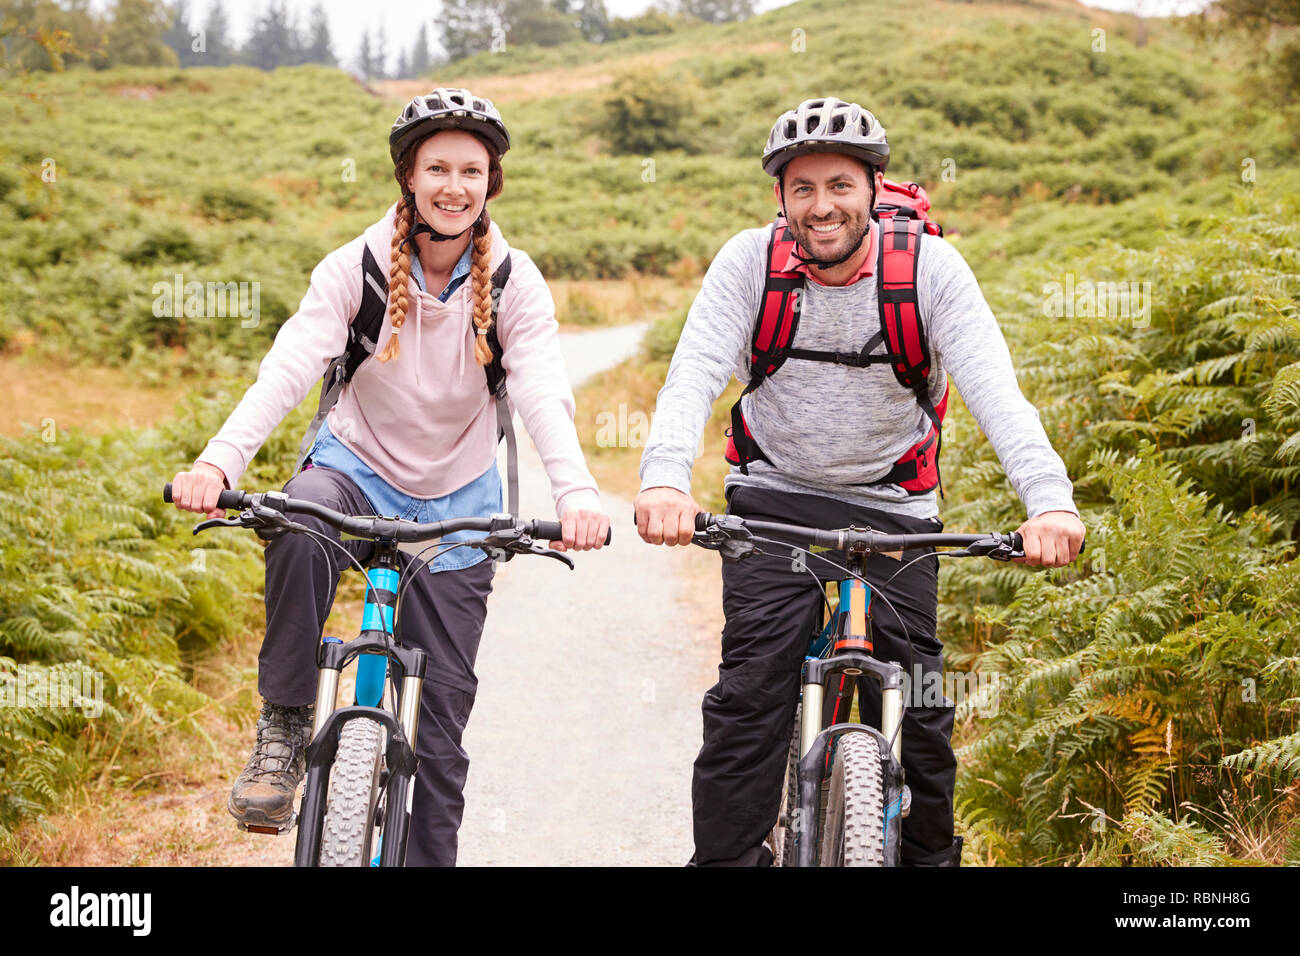 Young adult couple Riding Mountain vélos dans un chemin de campagne, looking at camera, portrait Banque D'Images